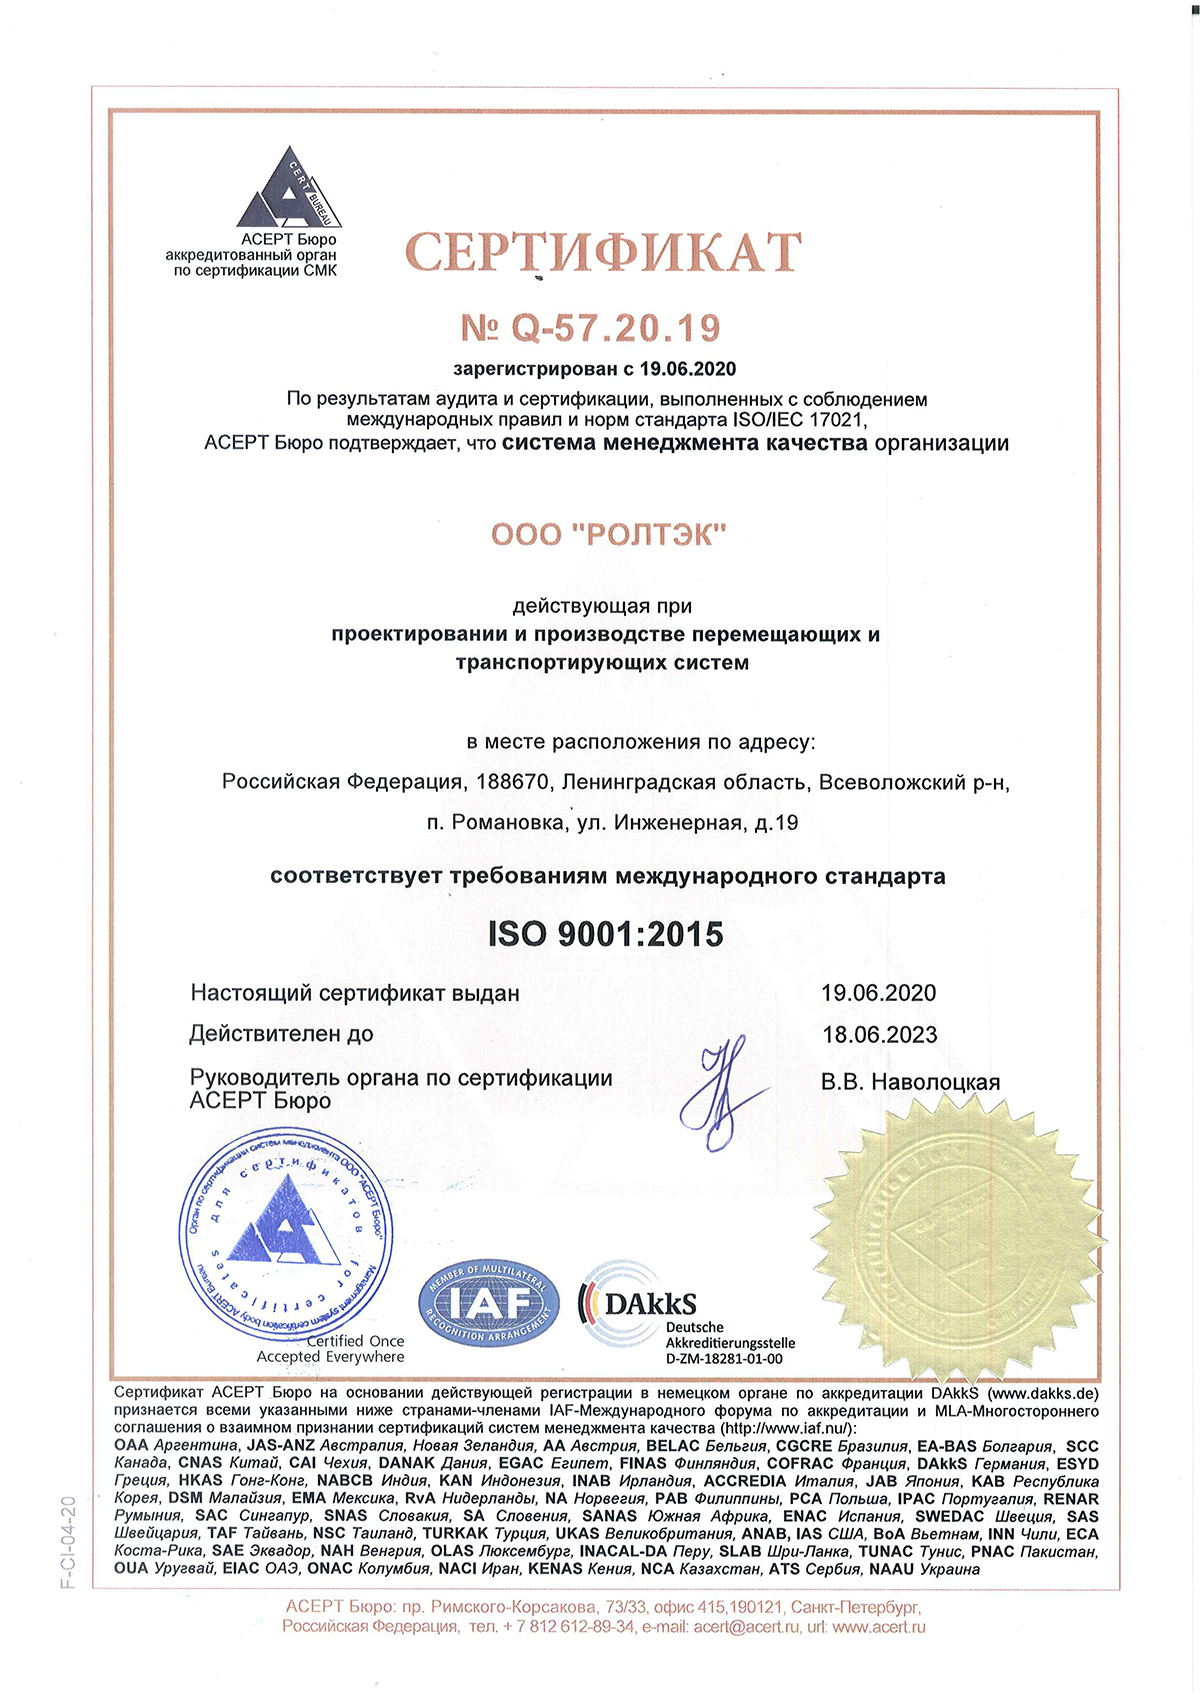 Сертификат соответствия системы менеждмента качества требованиям ISO 9001:2015